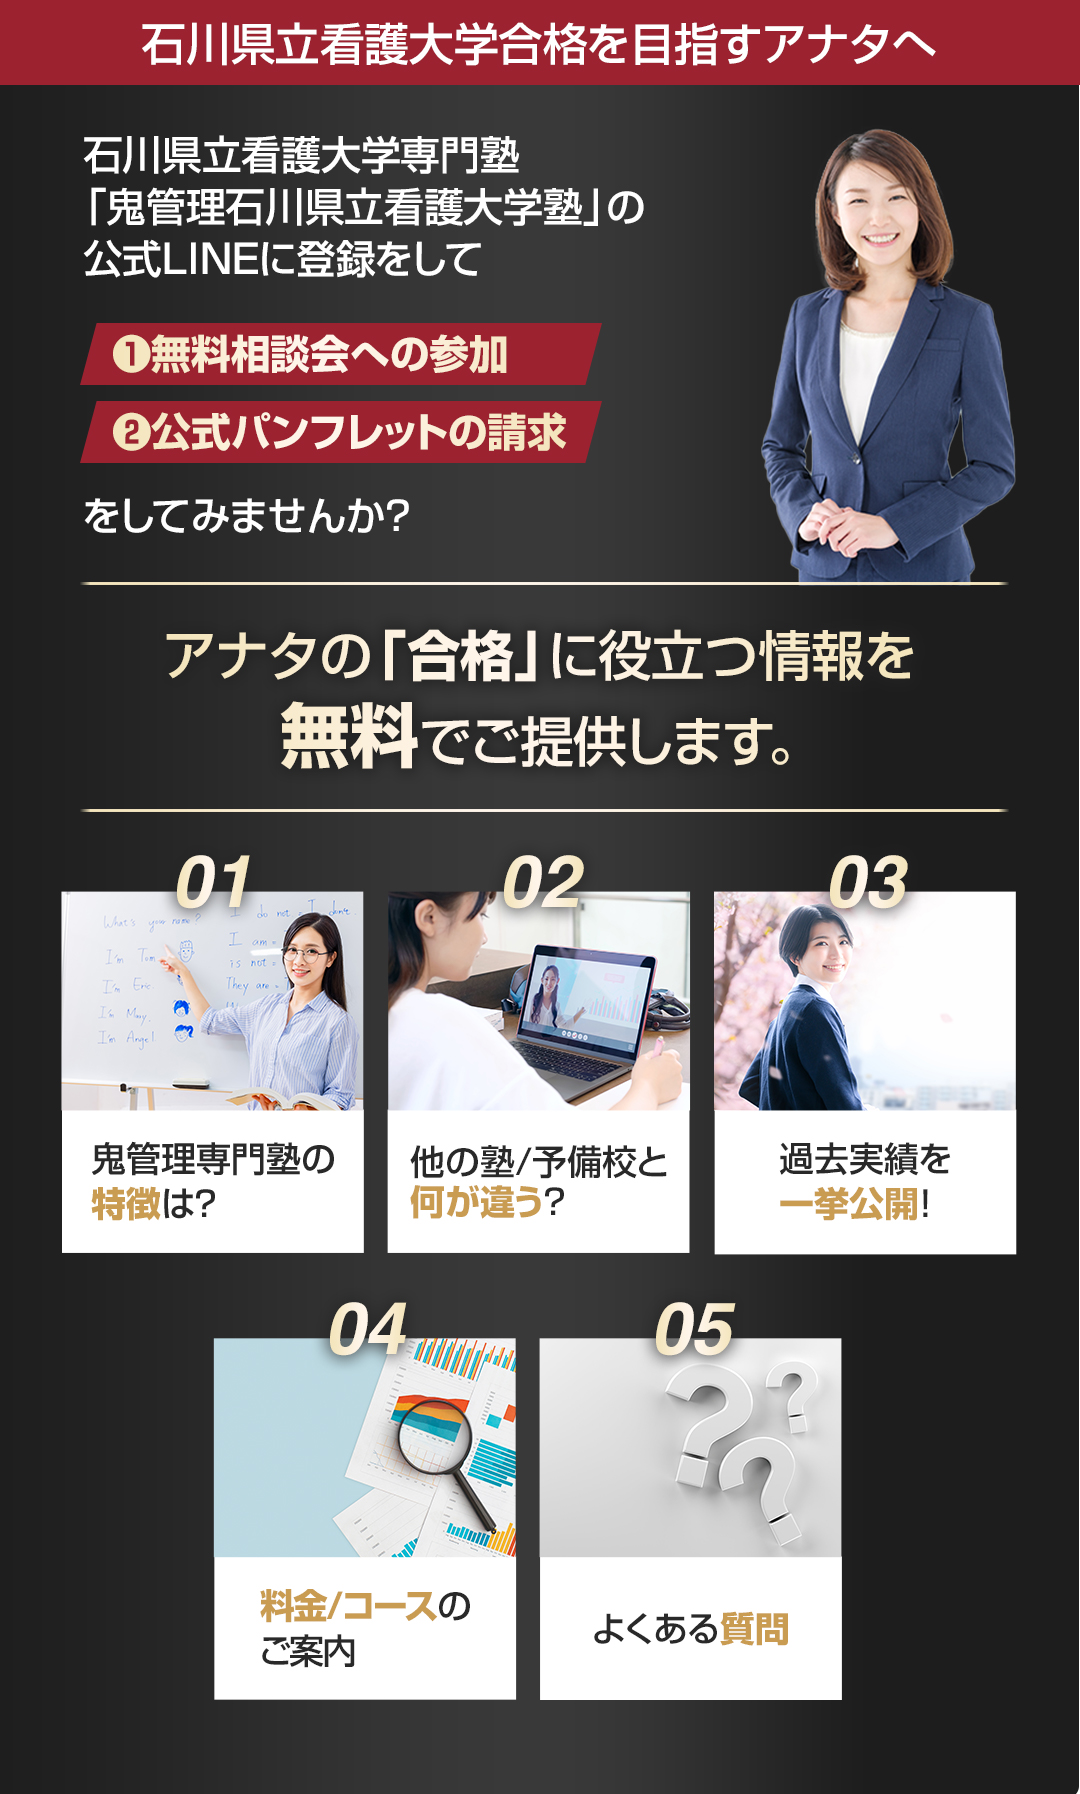 石川県立看護大学を目指すアナタへ合格に役立つ情報を無料でご提供します